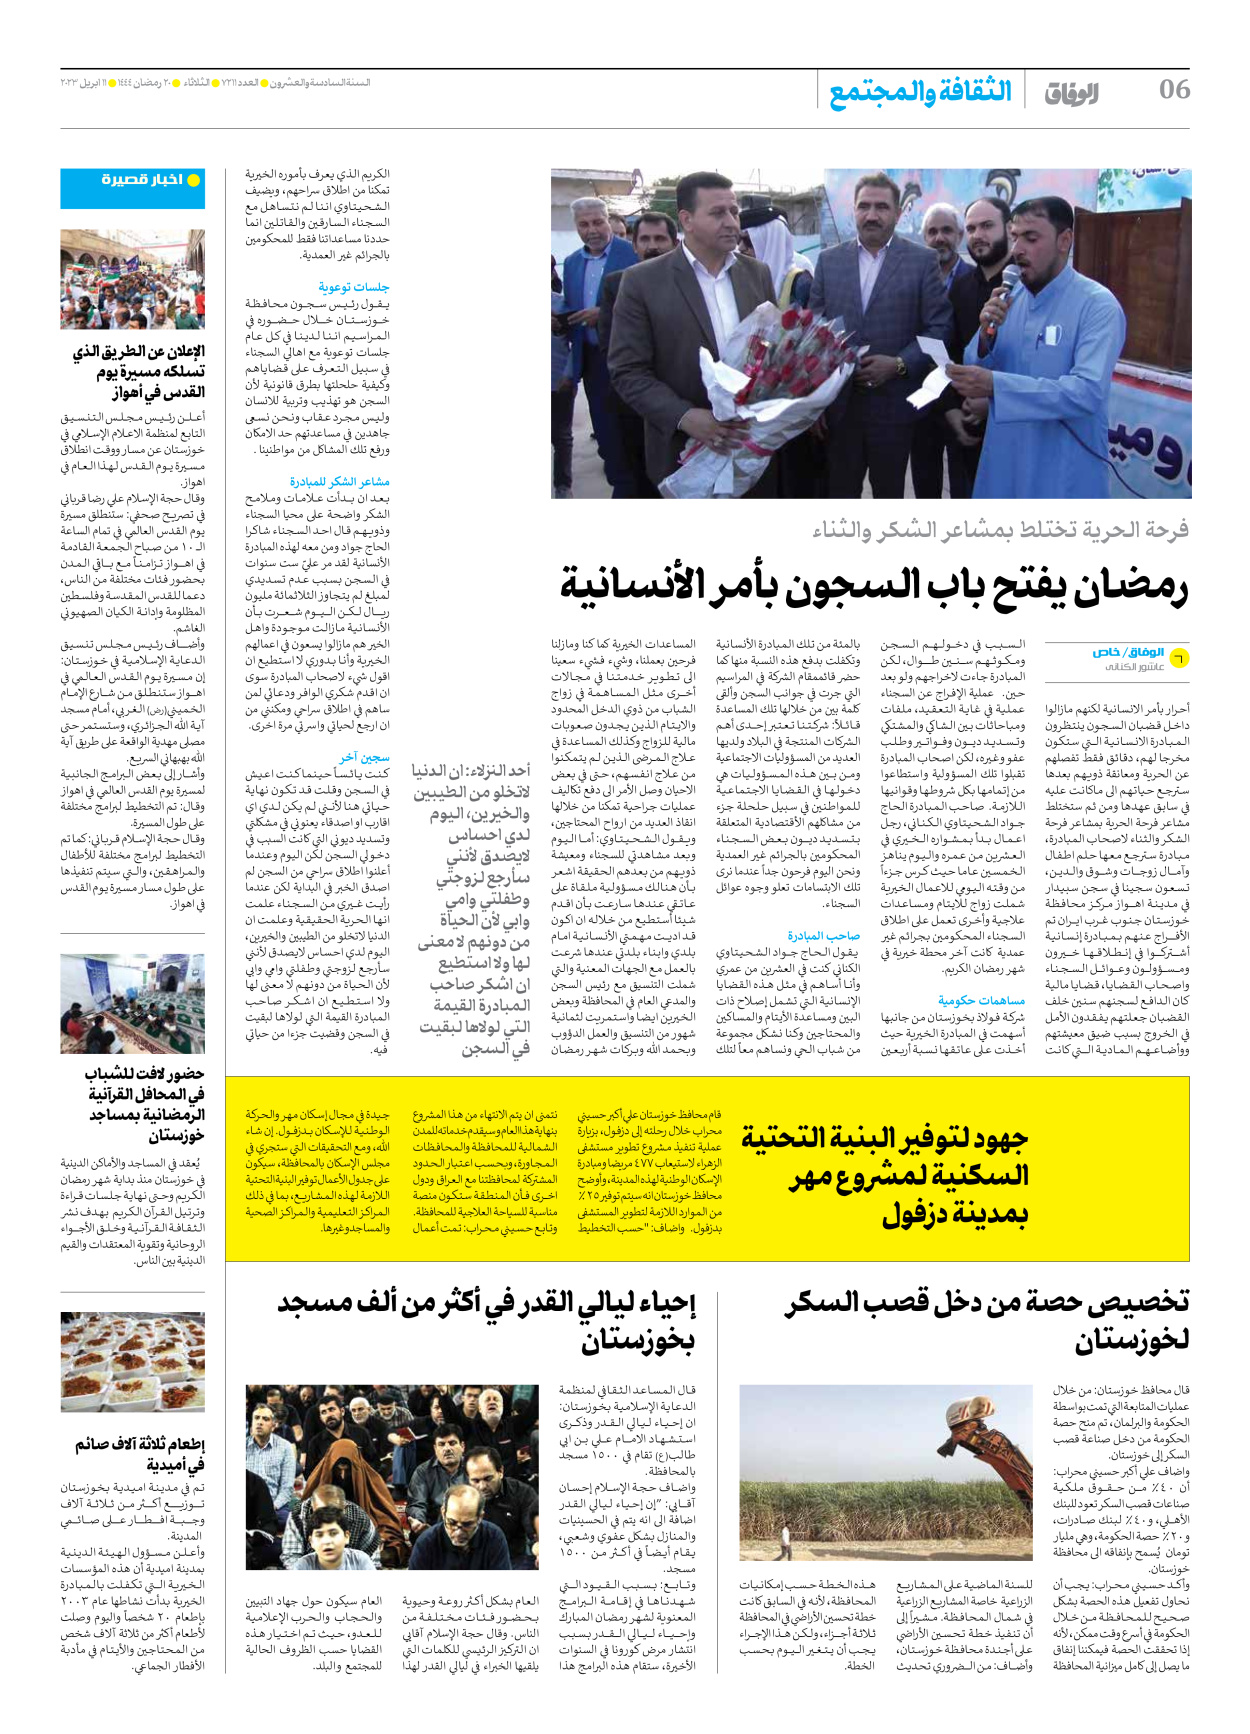 صحیفة ایران الدولیة الوفاق - العدد سبعة آلاف ومائتان وأحد عشر - ١١ أبريل ٢٠٢٣ - الصفحة ٦